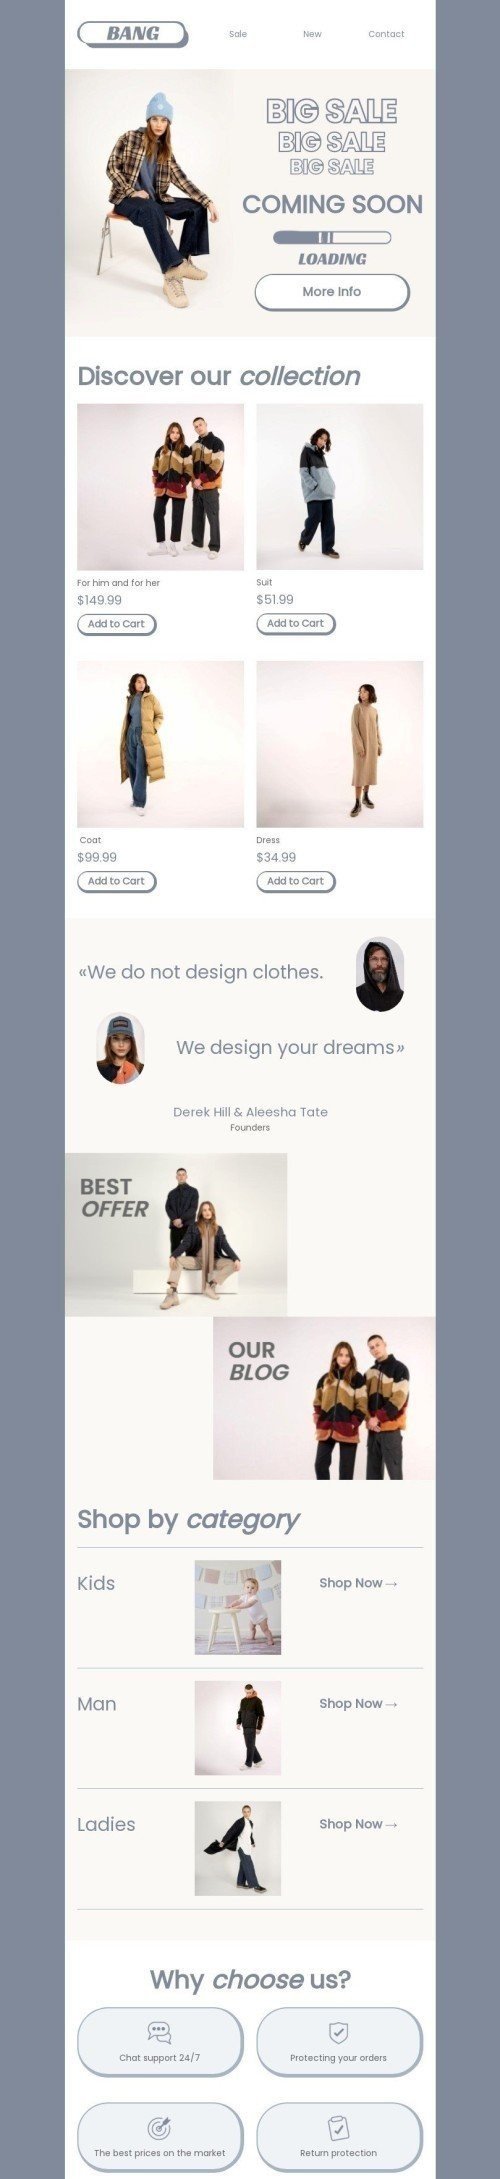 Plantilla de correo electrónico «Diseñamos tus sueños» de Próximamente para la industria de Moda Vista de móvil